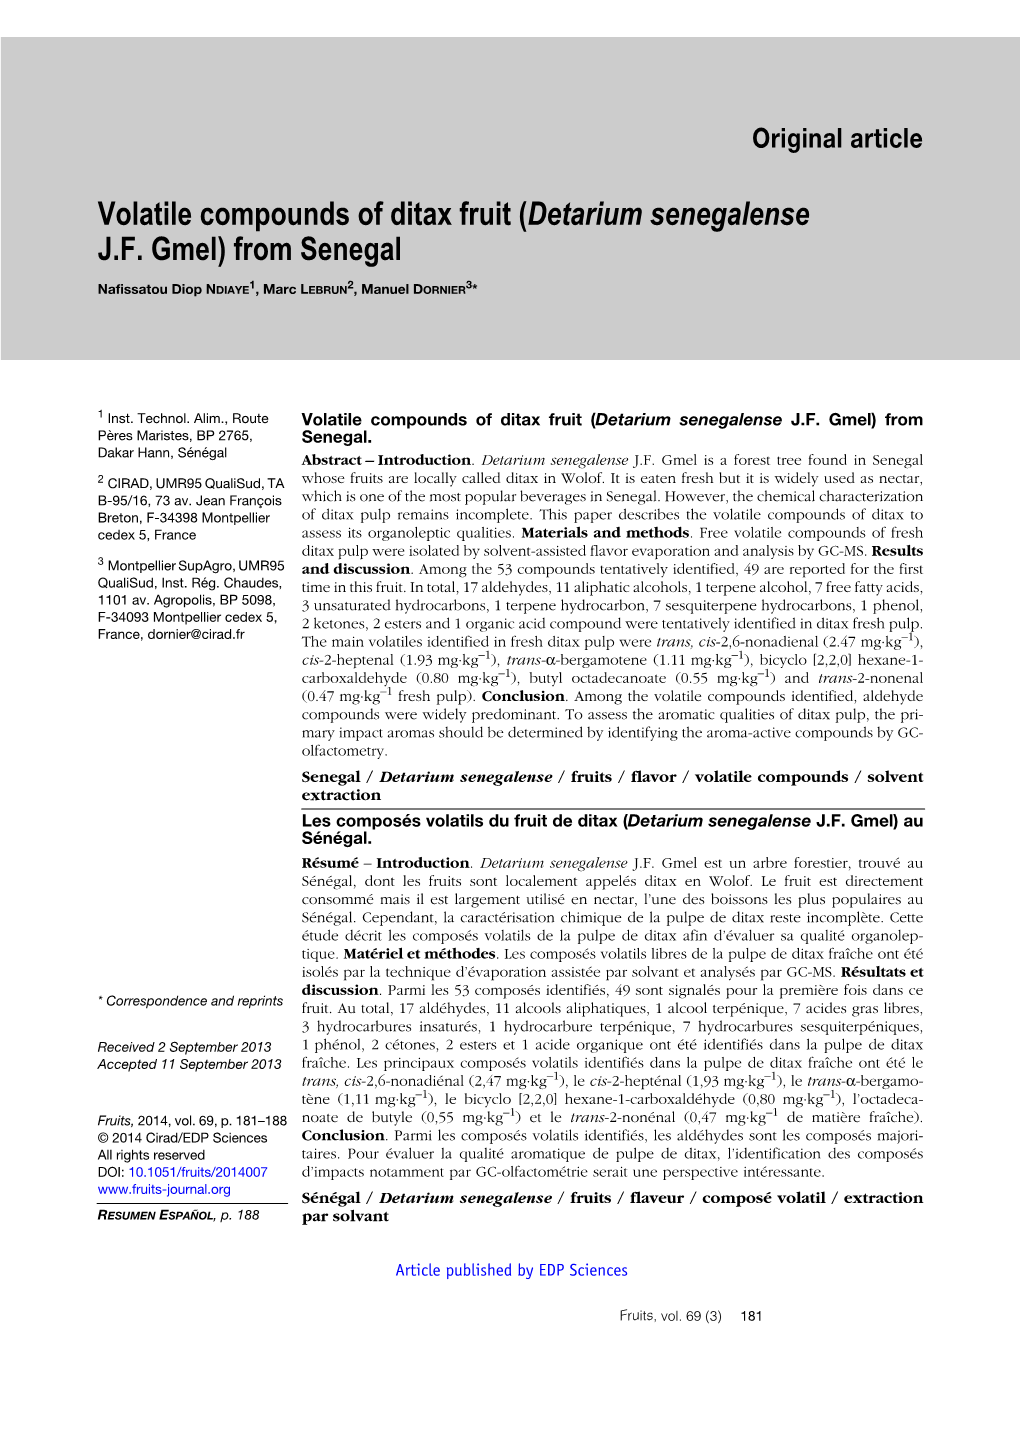 (Detarium Senegalense JF Gmel) from Senegal